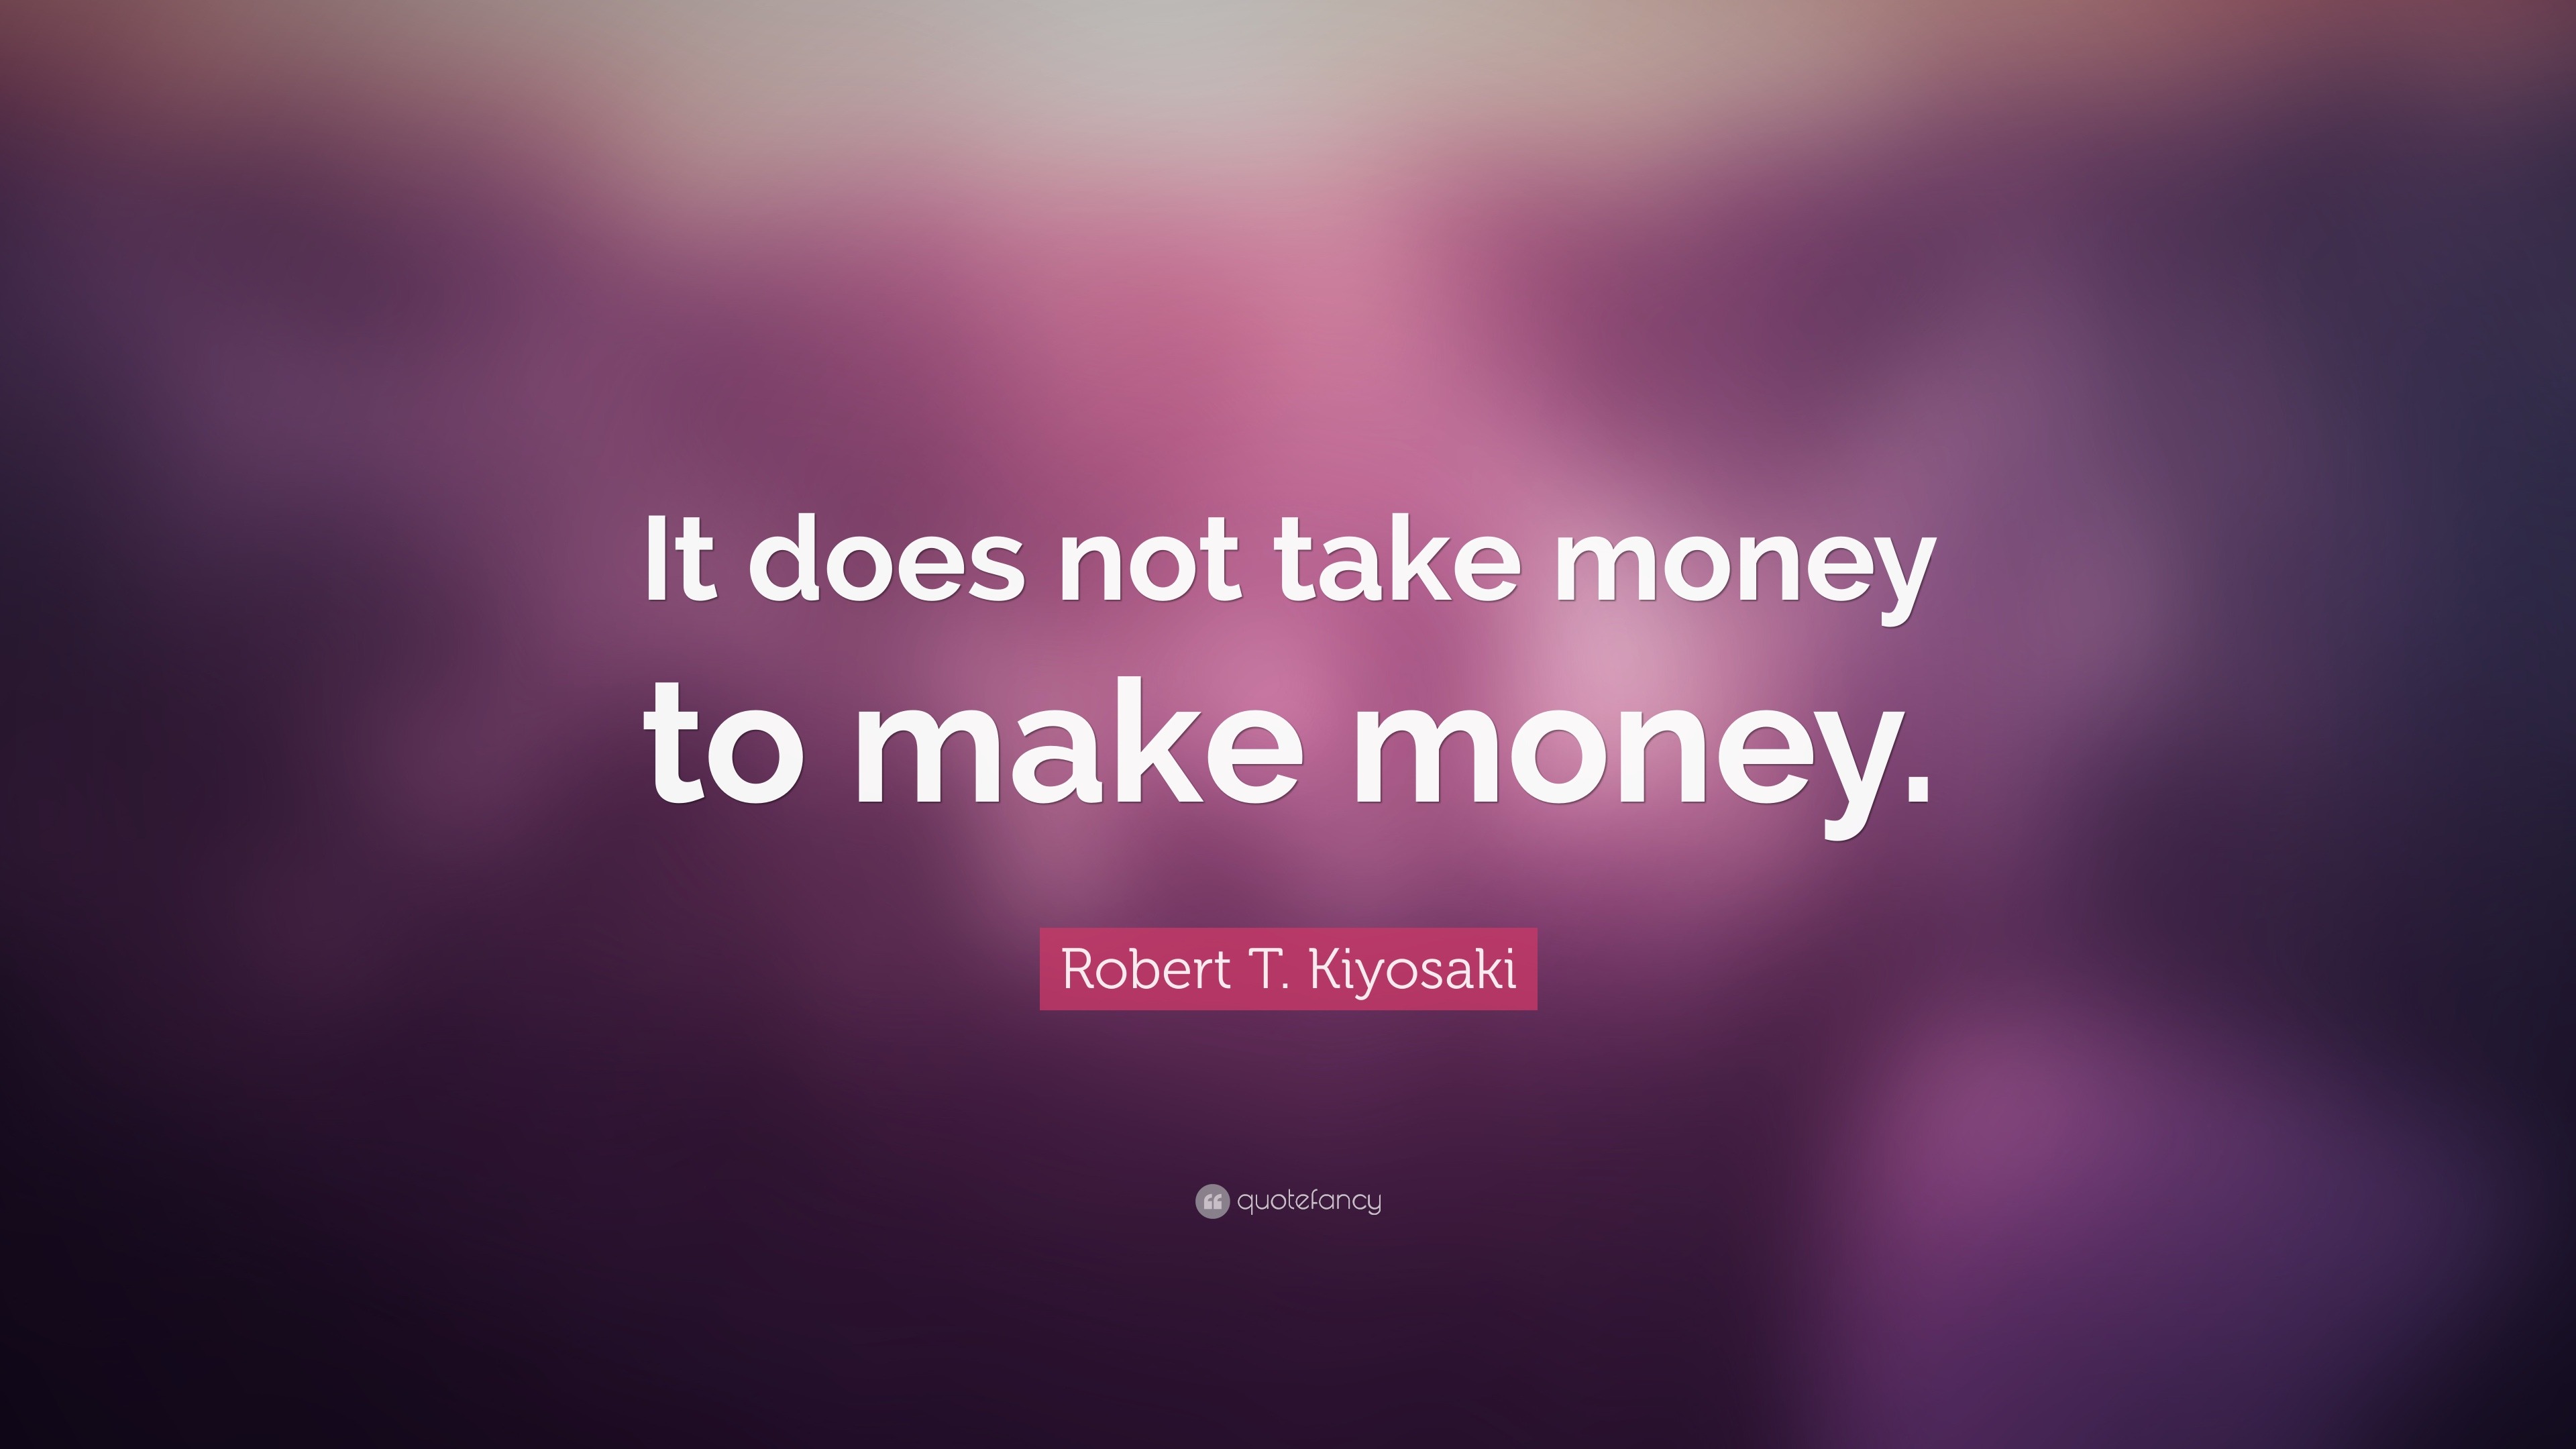 need money to make money quote